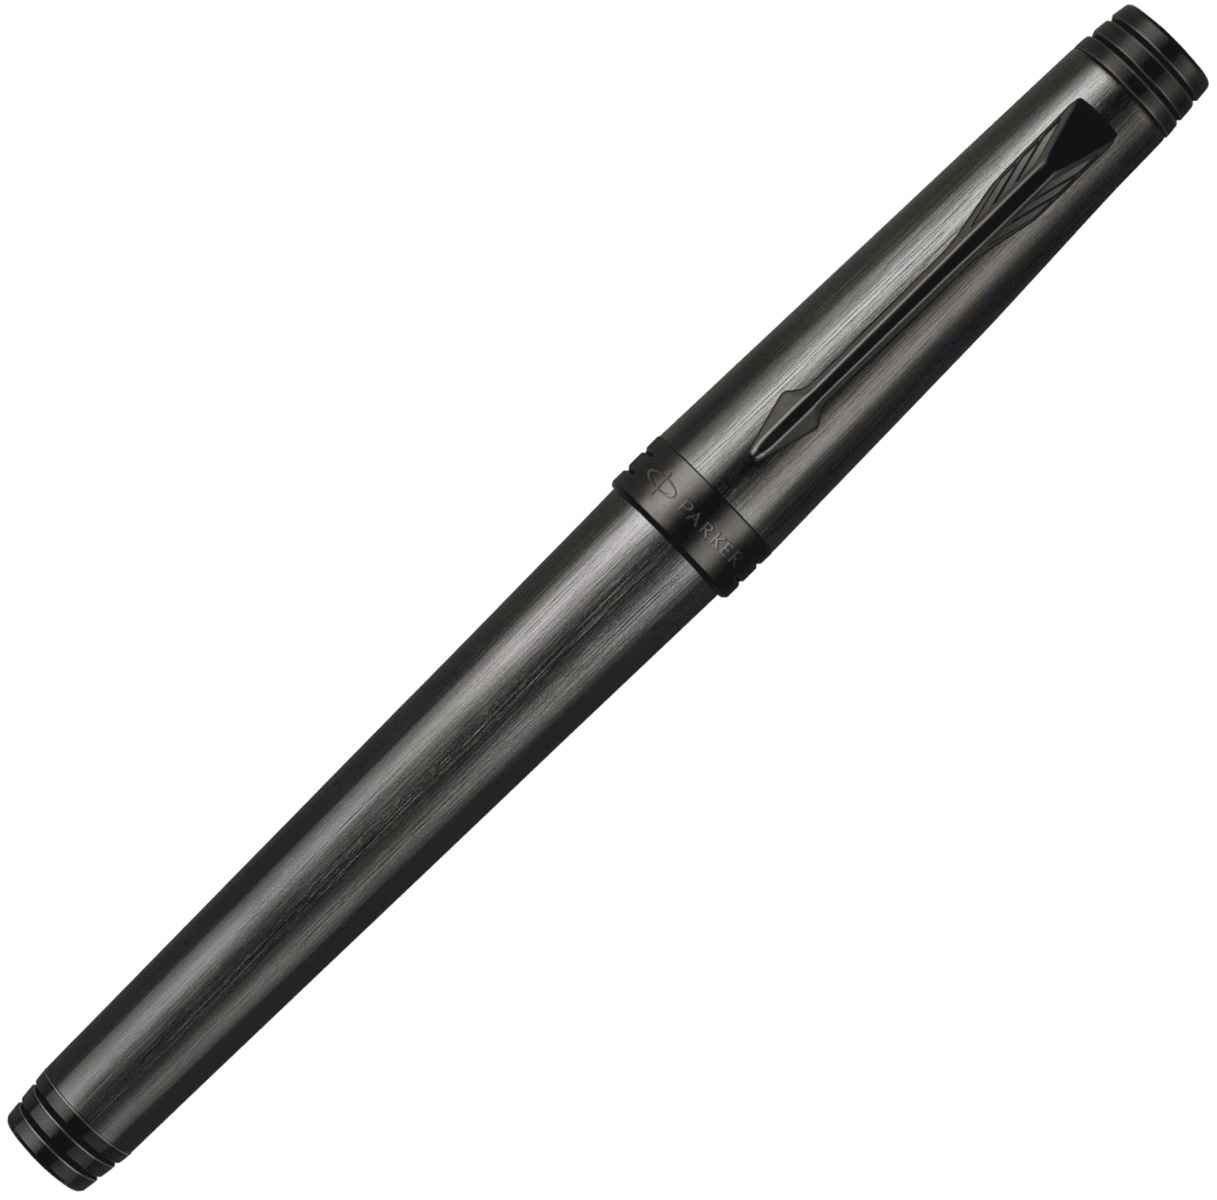 Ручка роллер Parker Premier T563, Black Edition 2010, фото 2